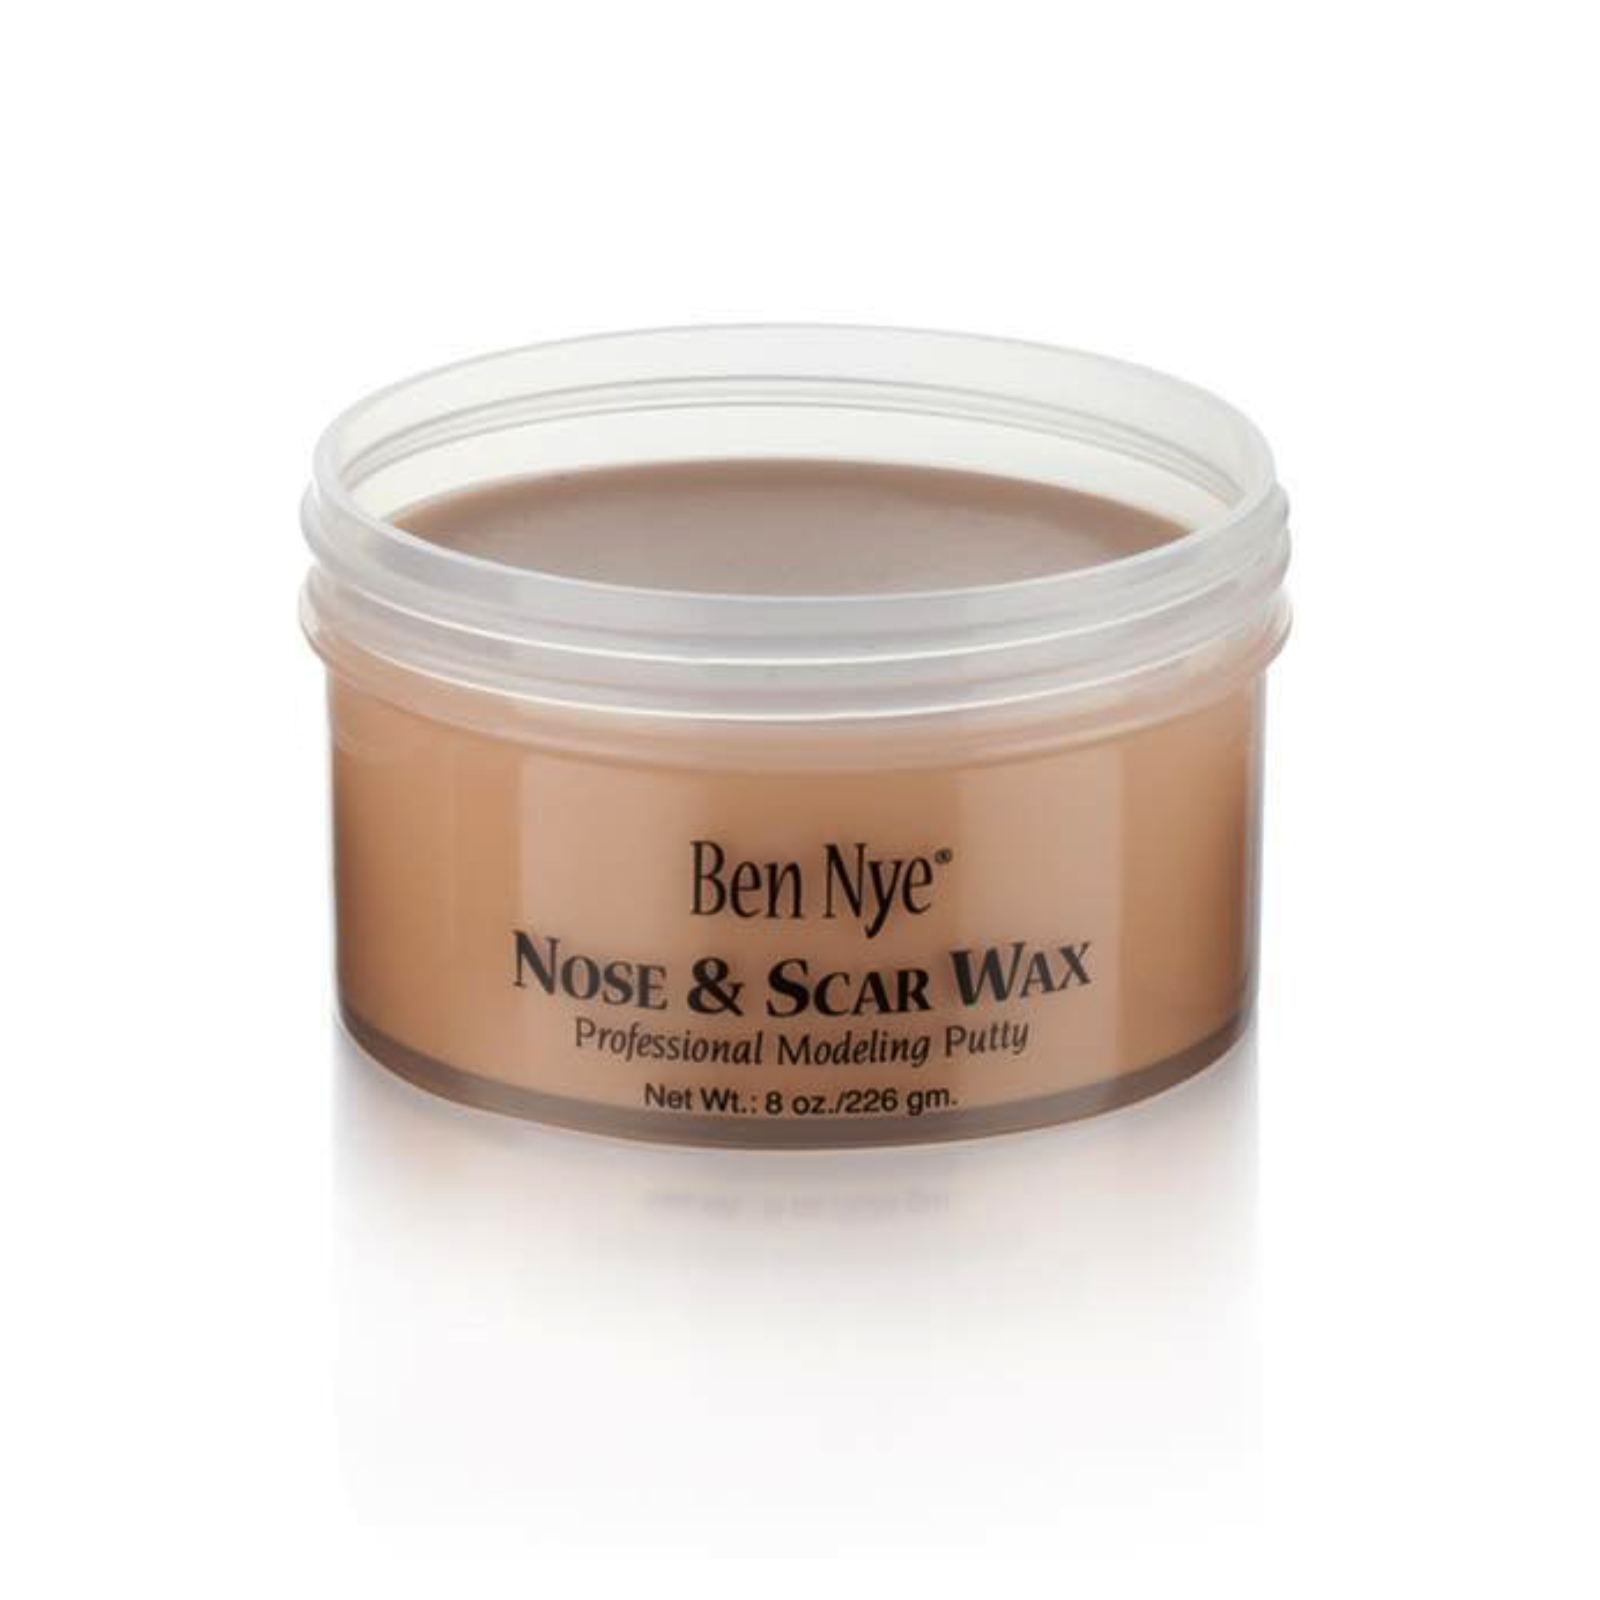 Ben Nye Nose & Scar Wax